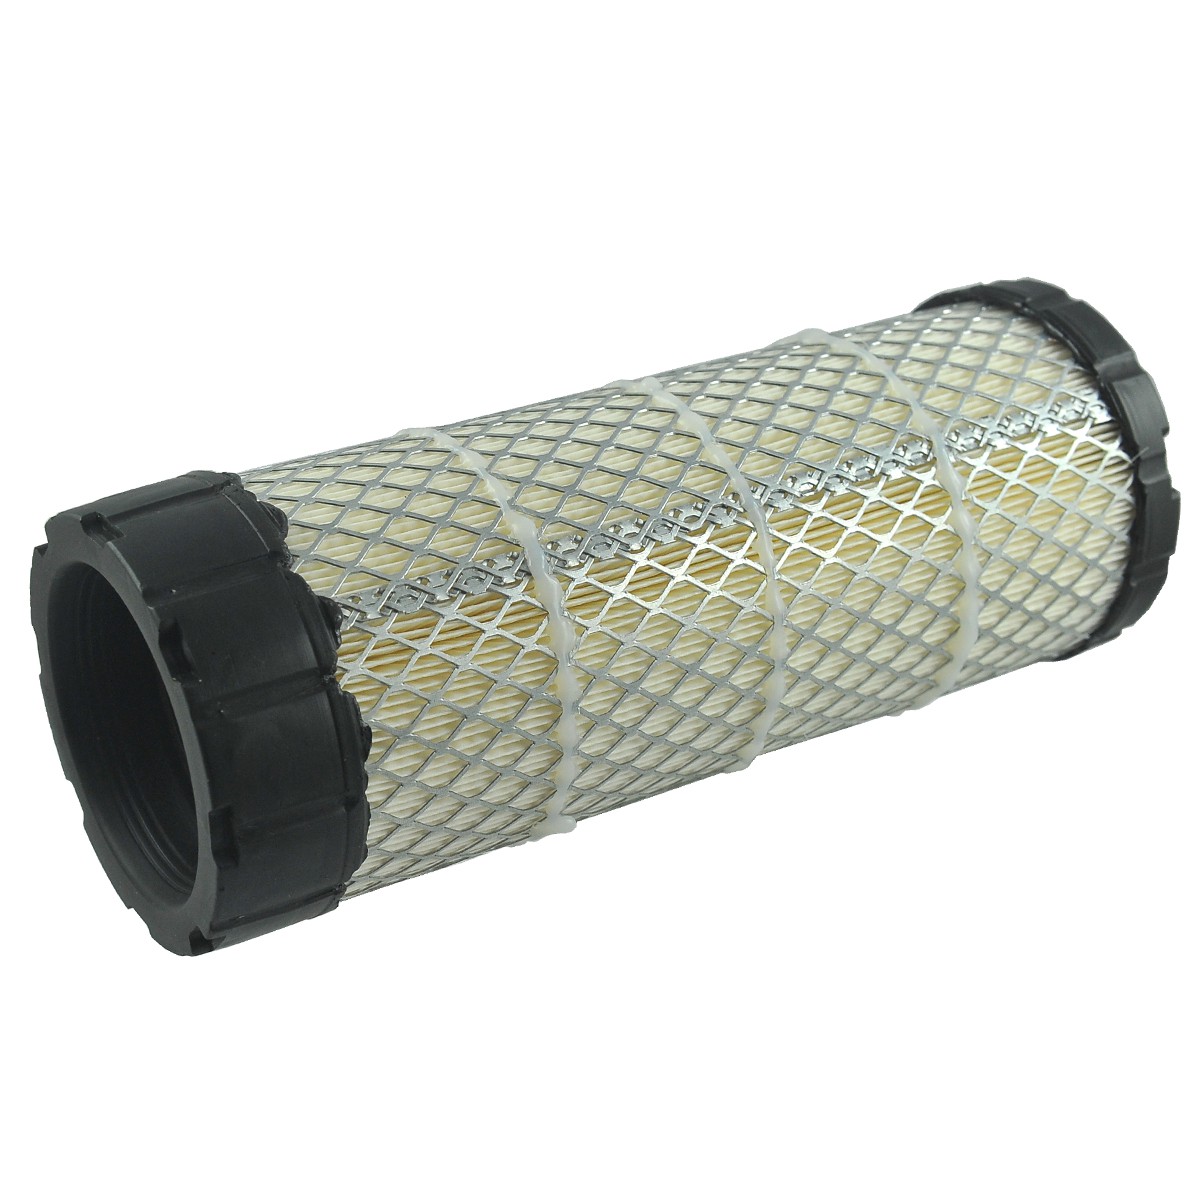 Vzduchový filtr / 105 x 275 mm / Kubota L3008/L3301/L3608/L3901 / SA16615 / TC422-93230 / 6-01-102-05